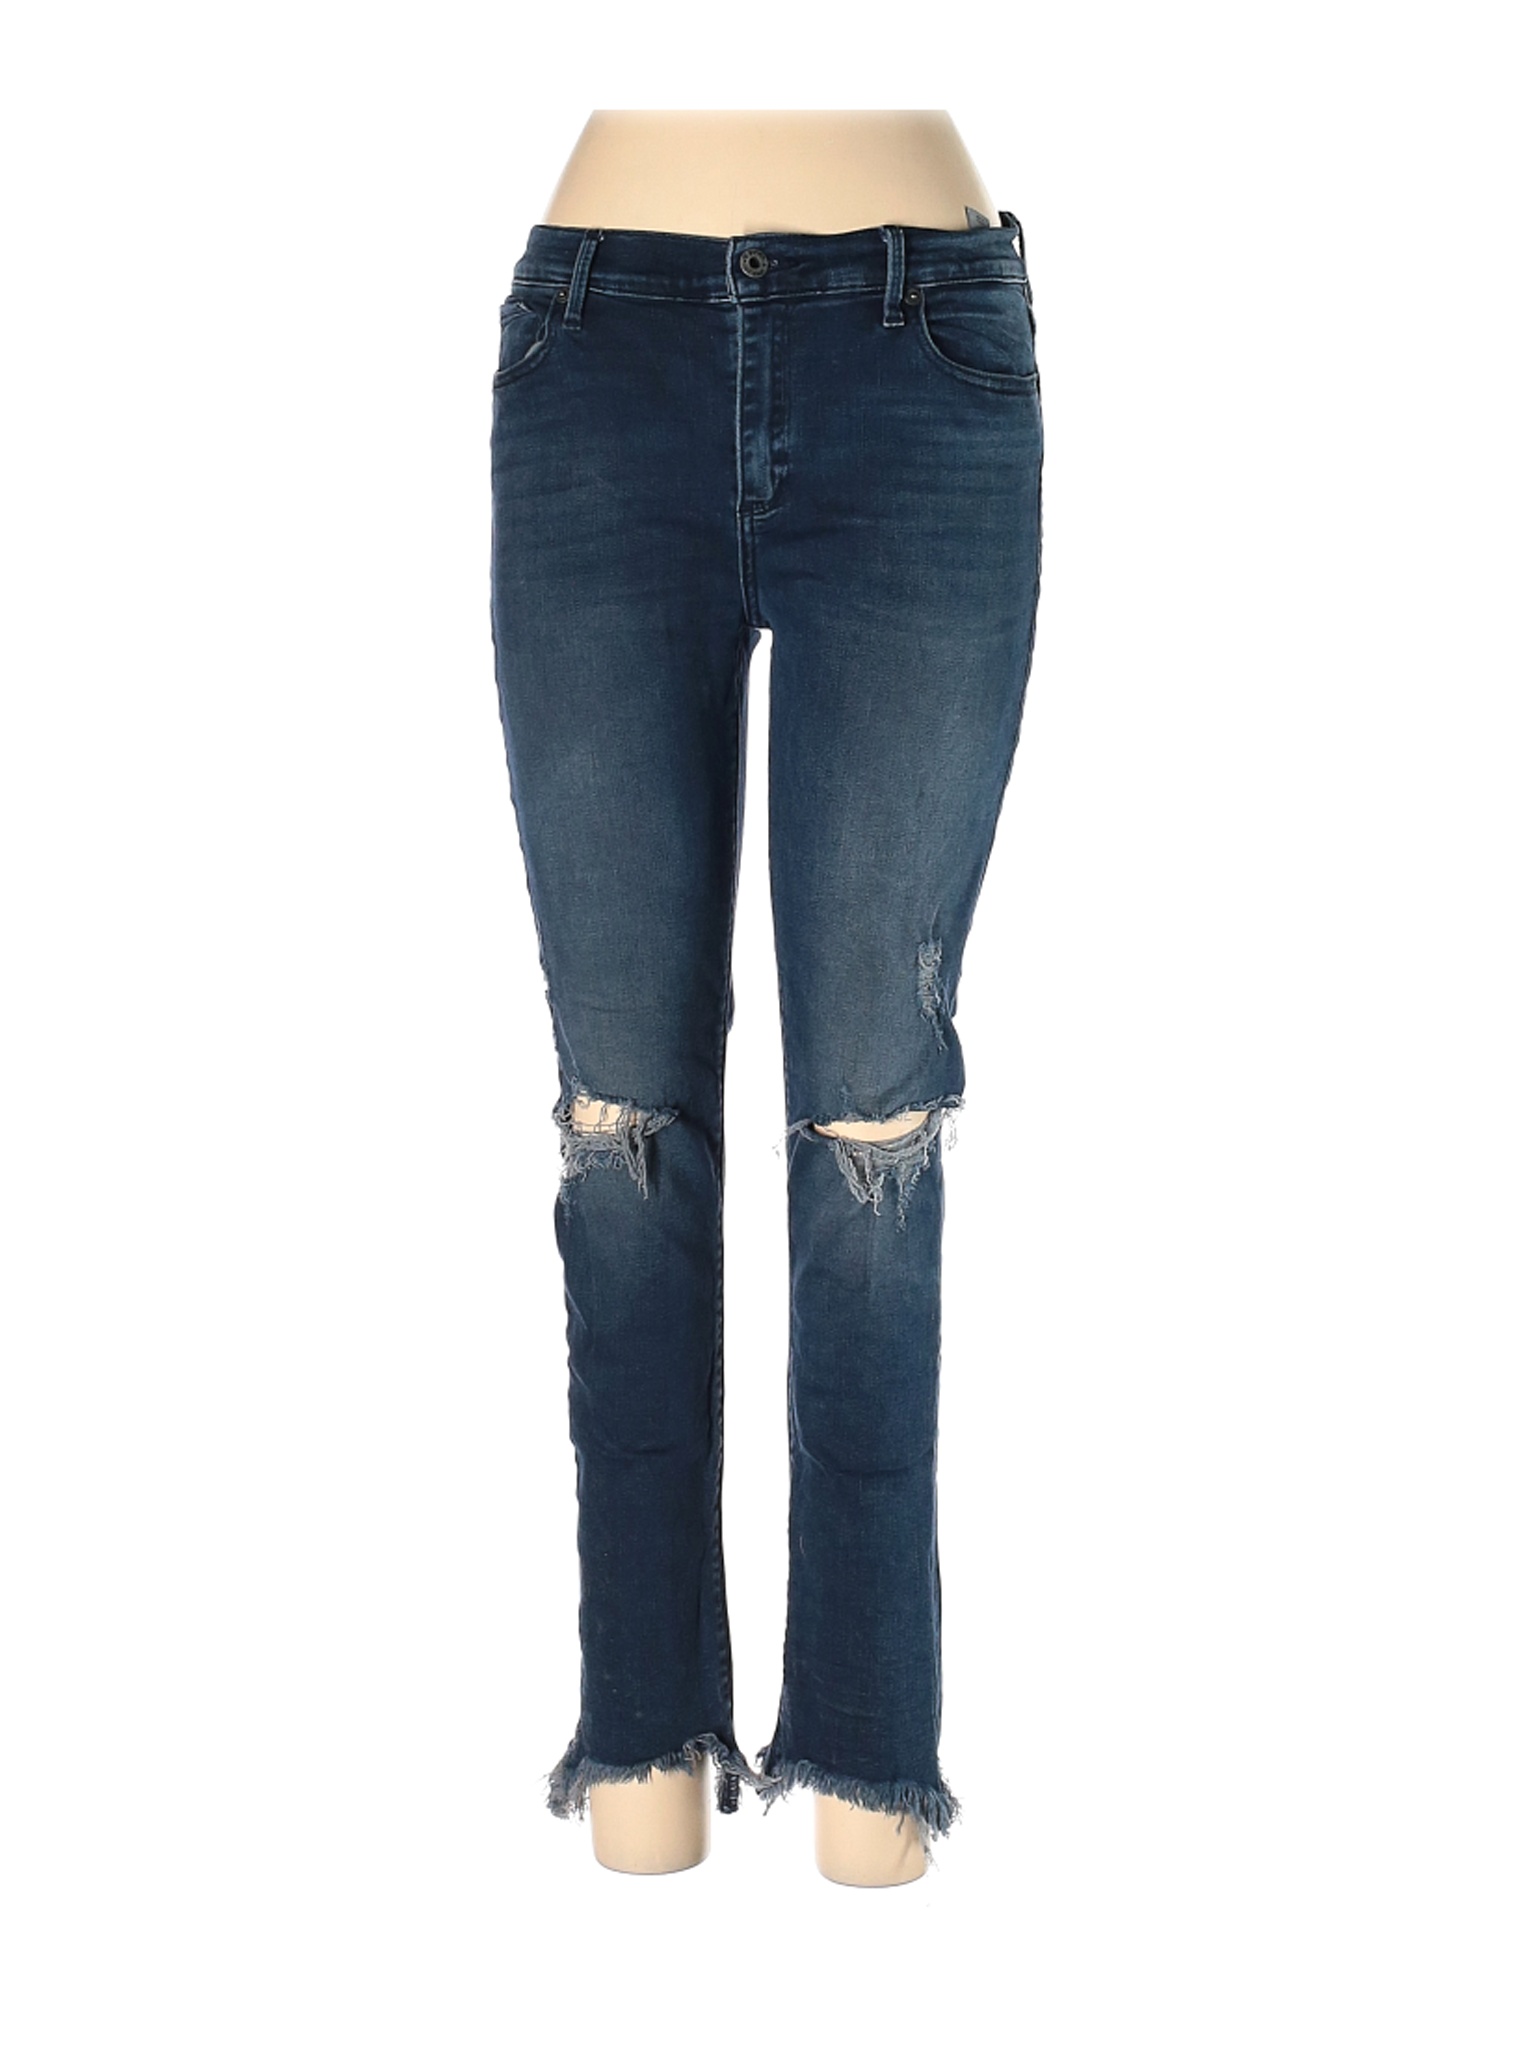 Lucky Brand Women Blue Jeans 30W | eBay